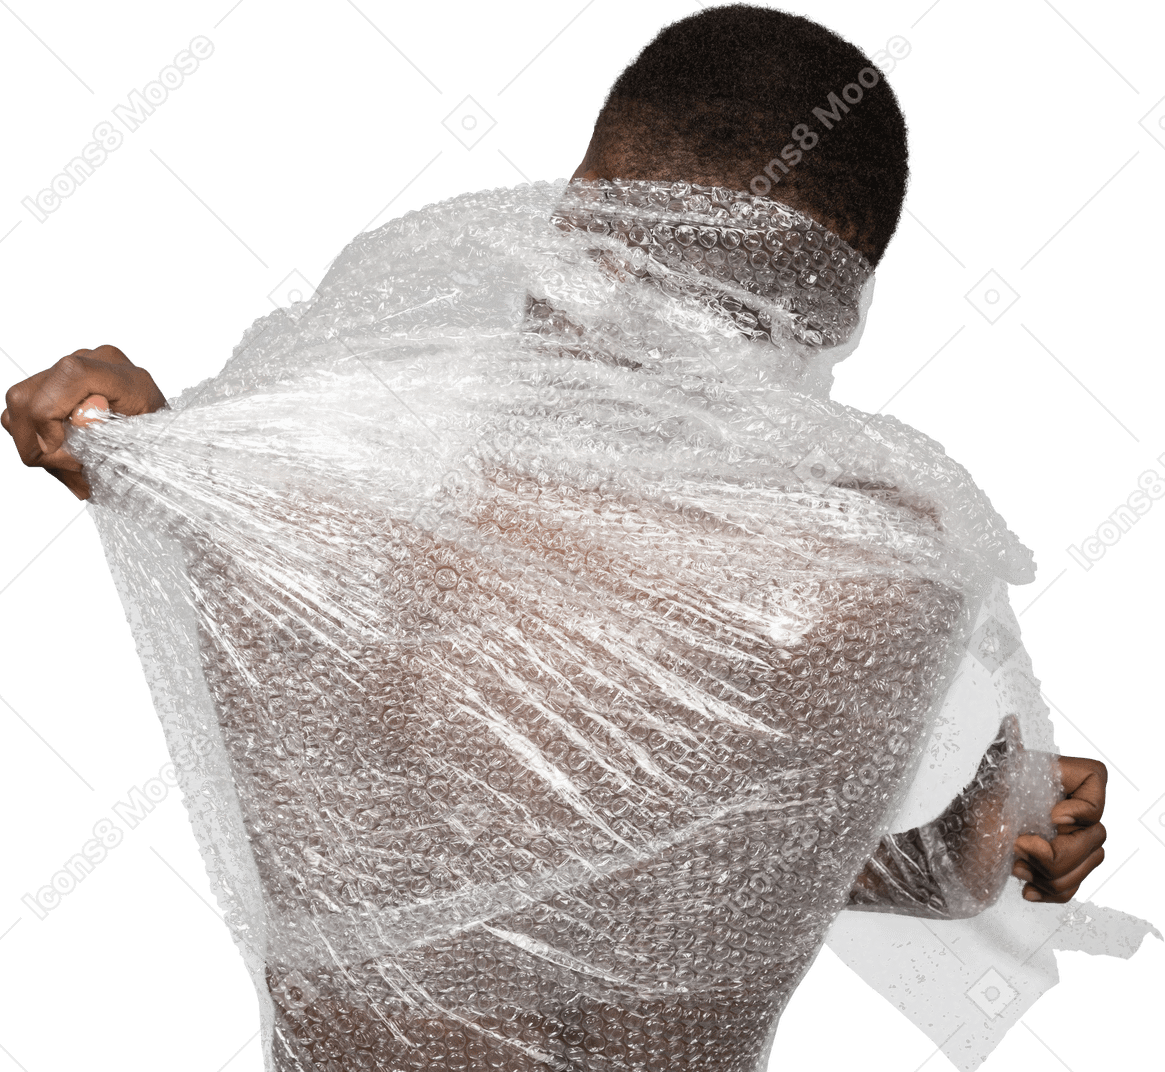 Confezione vista di un maschio africano che strappa l'involucro di plastica